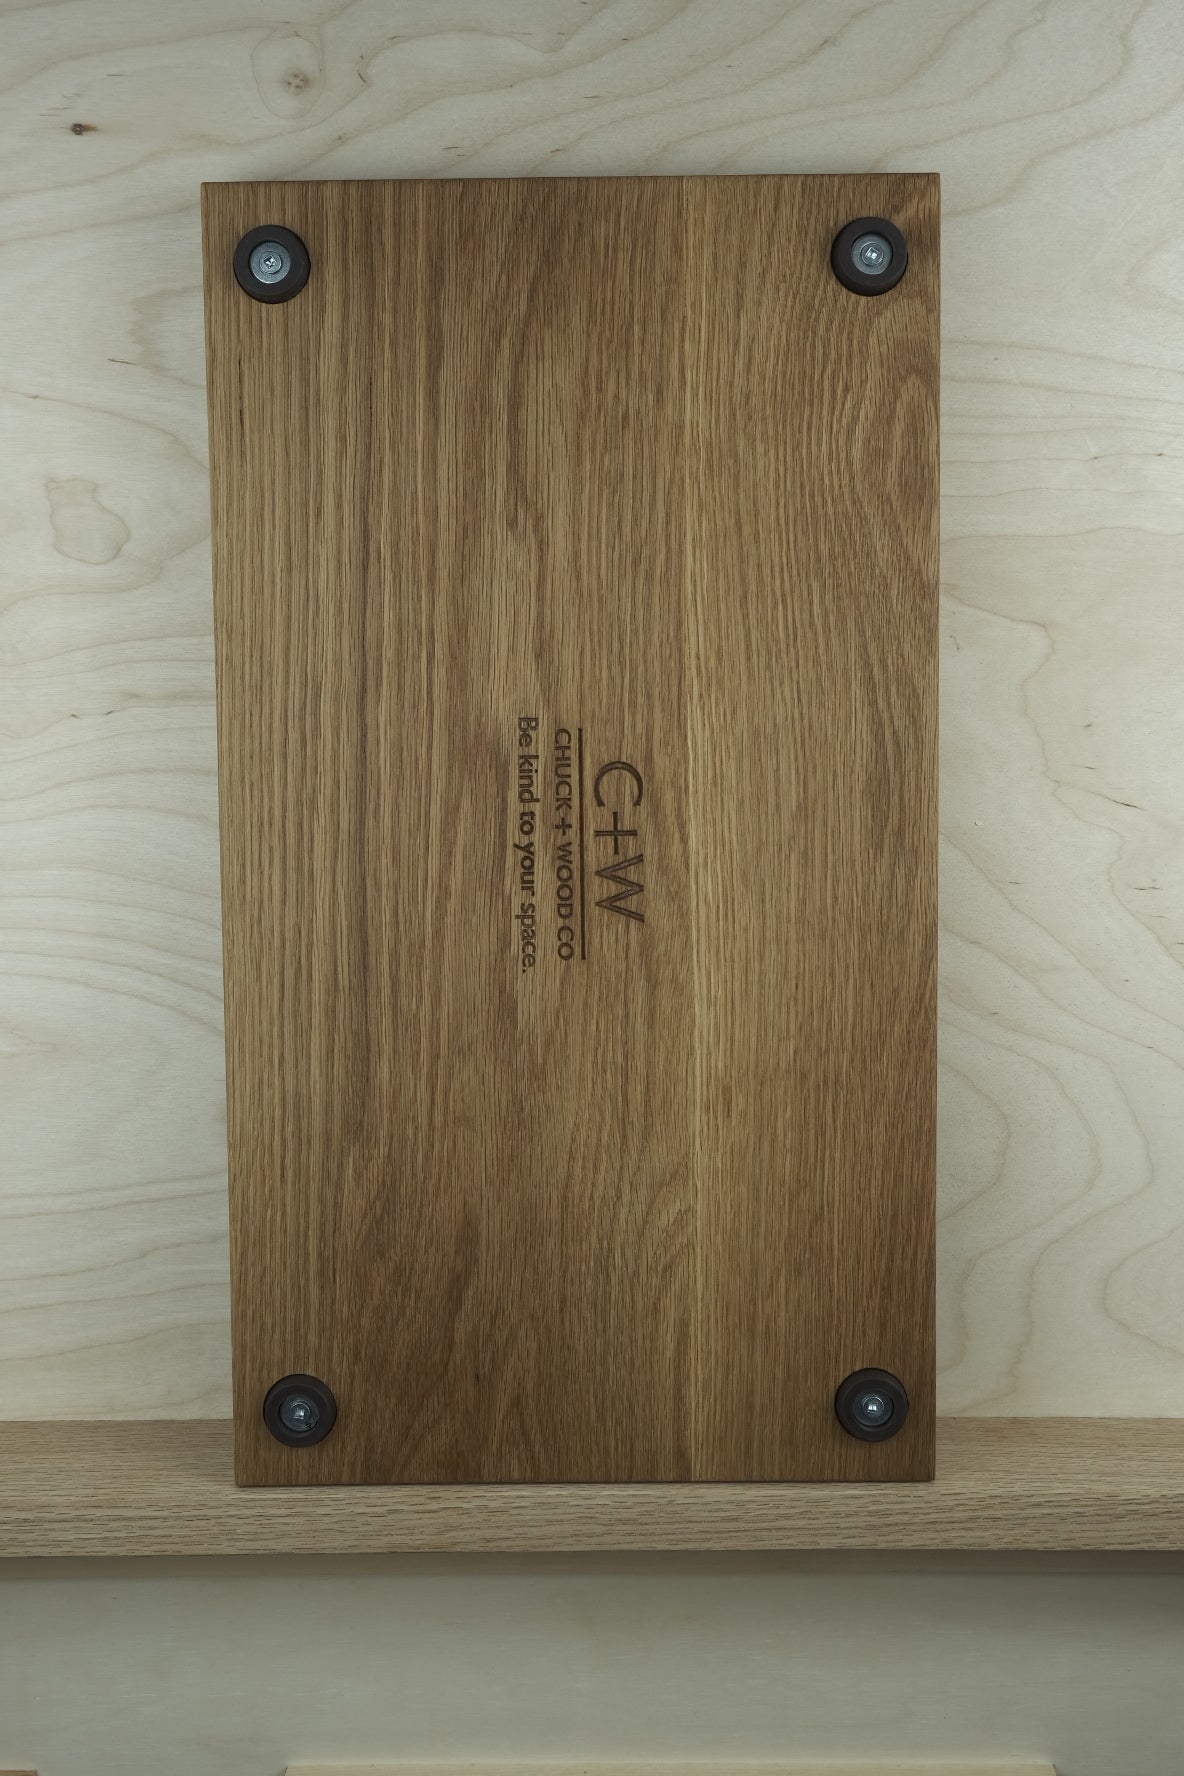 White oak cutting board